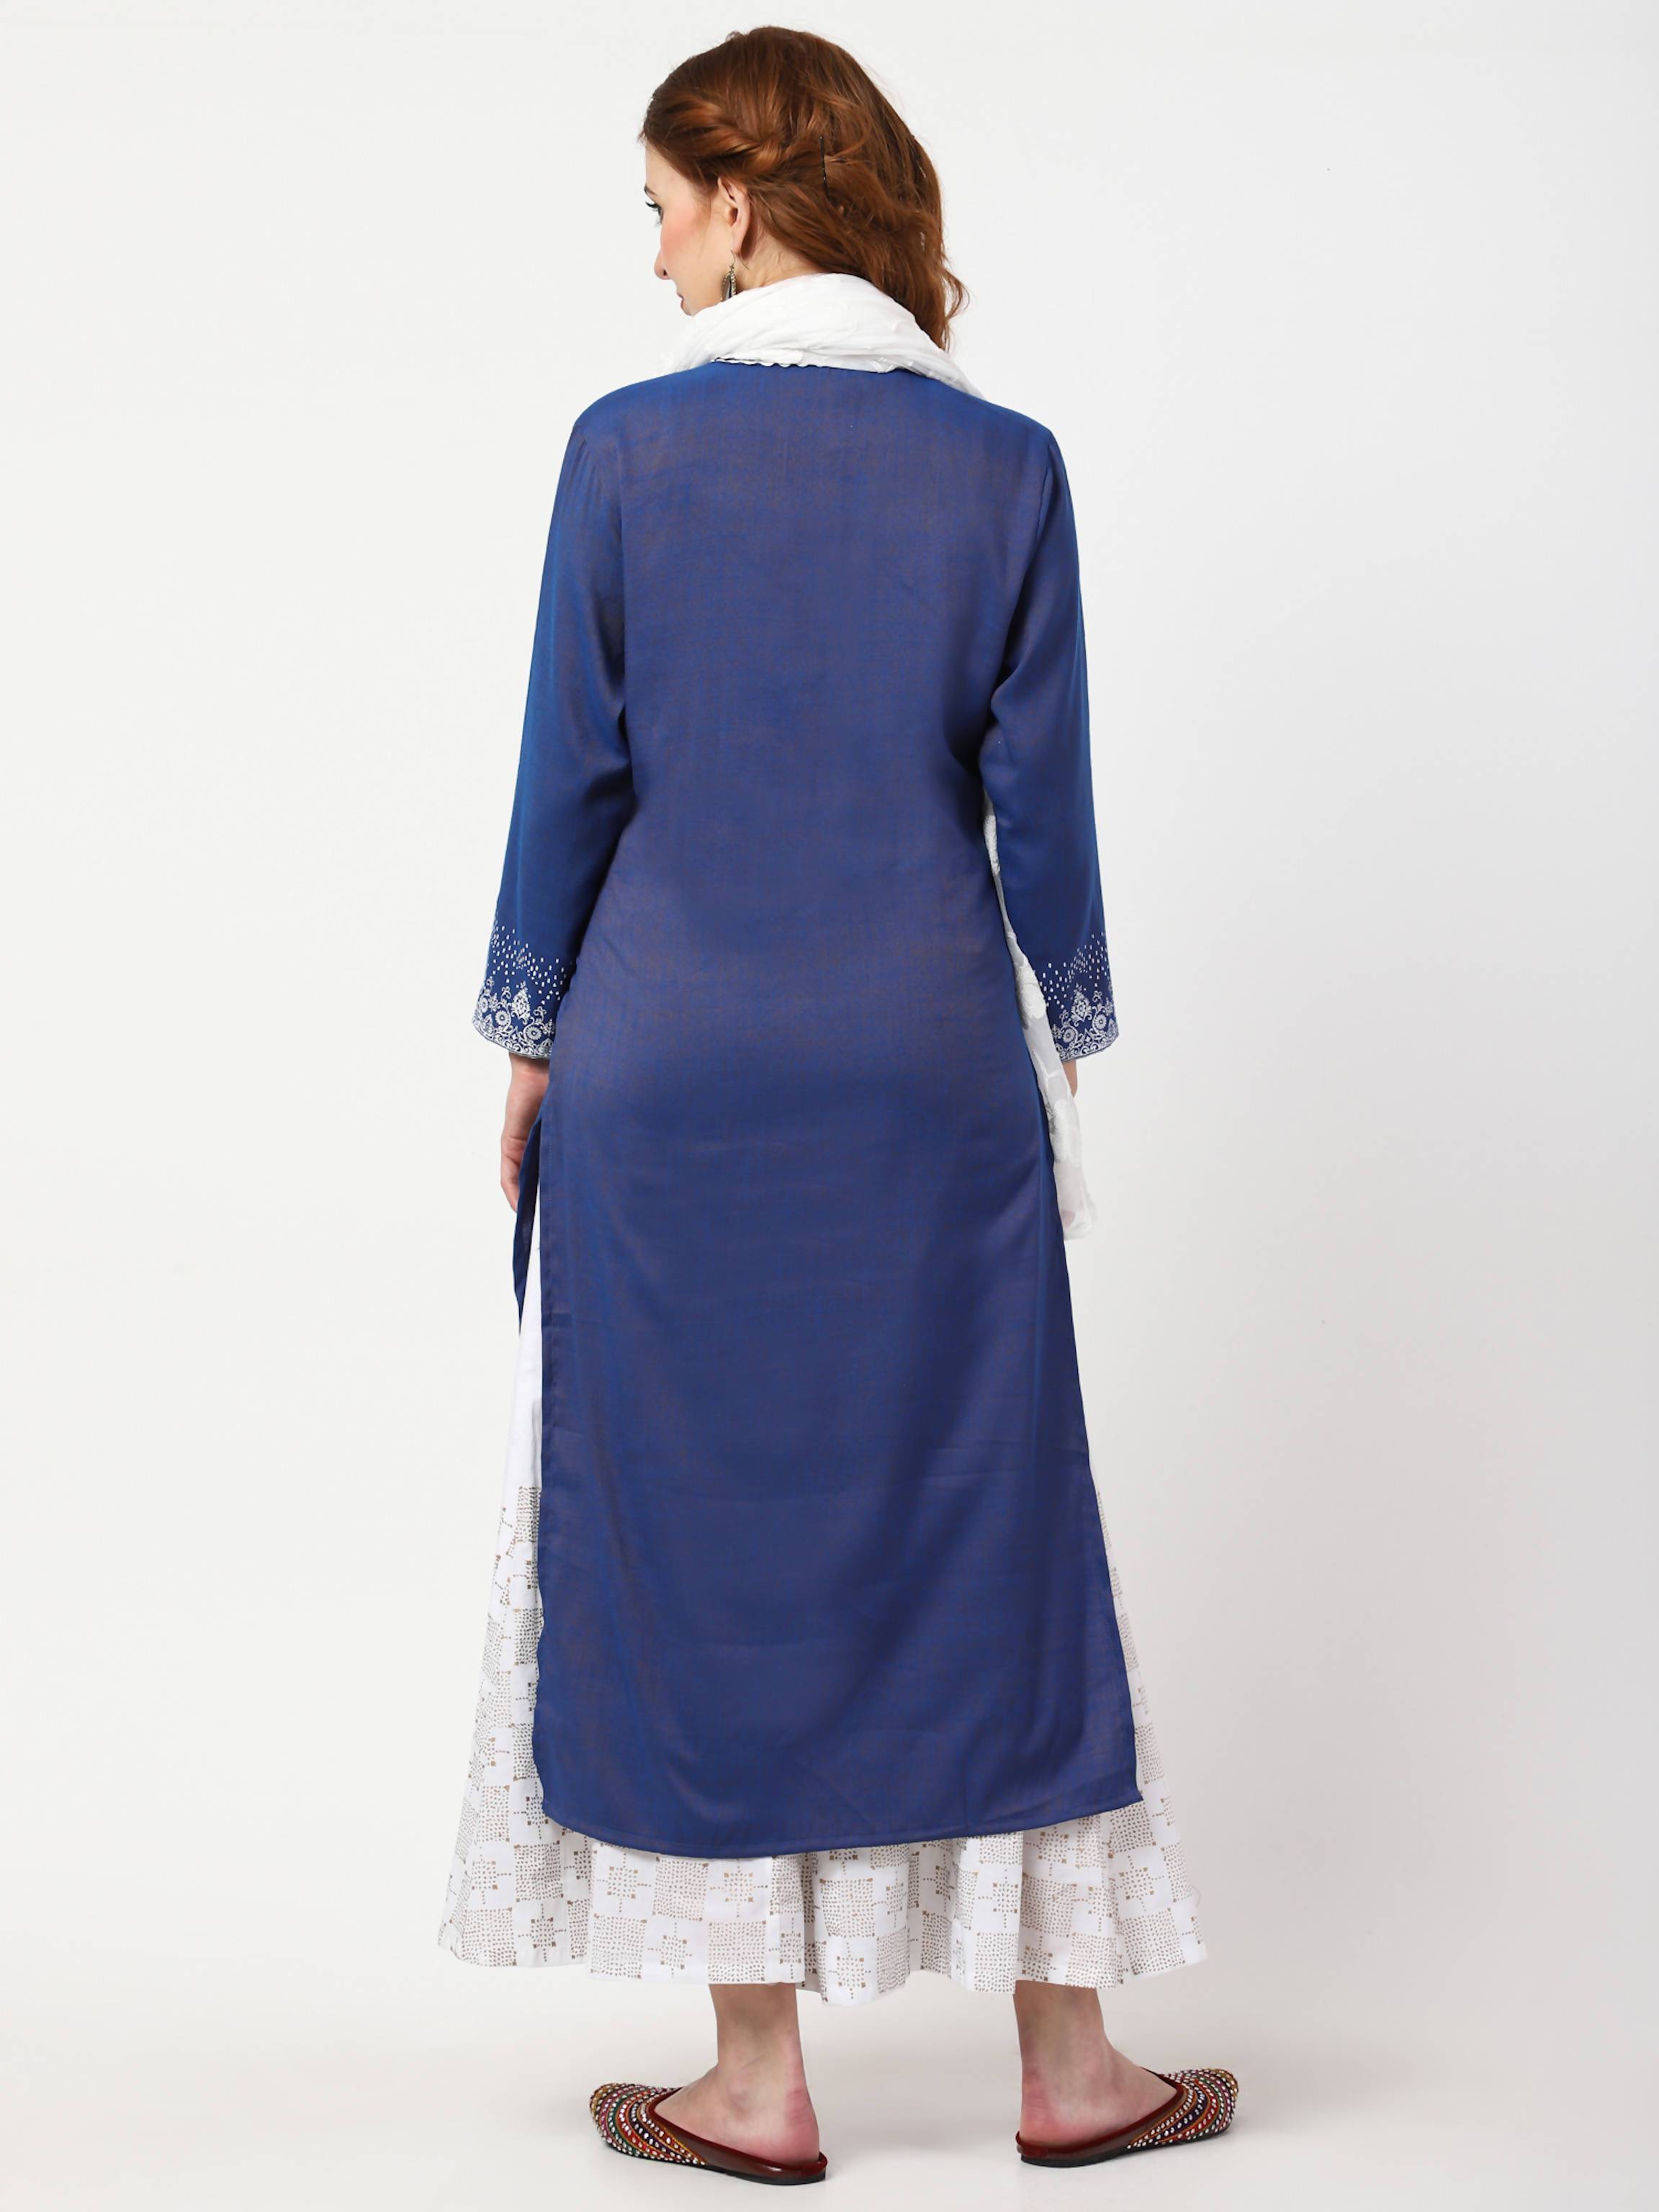 Women's Blue & White Rayon Cotton Kurta With Palazzo & Embroidered Dupatta Set - Cheera